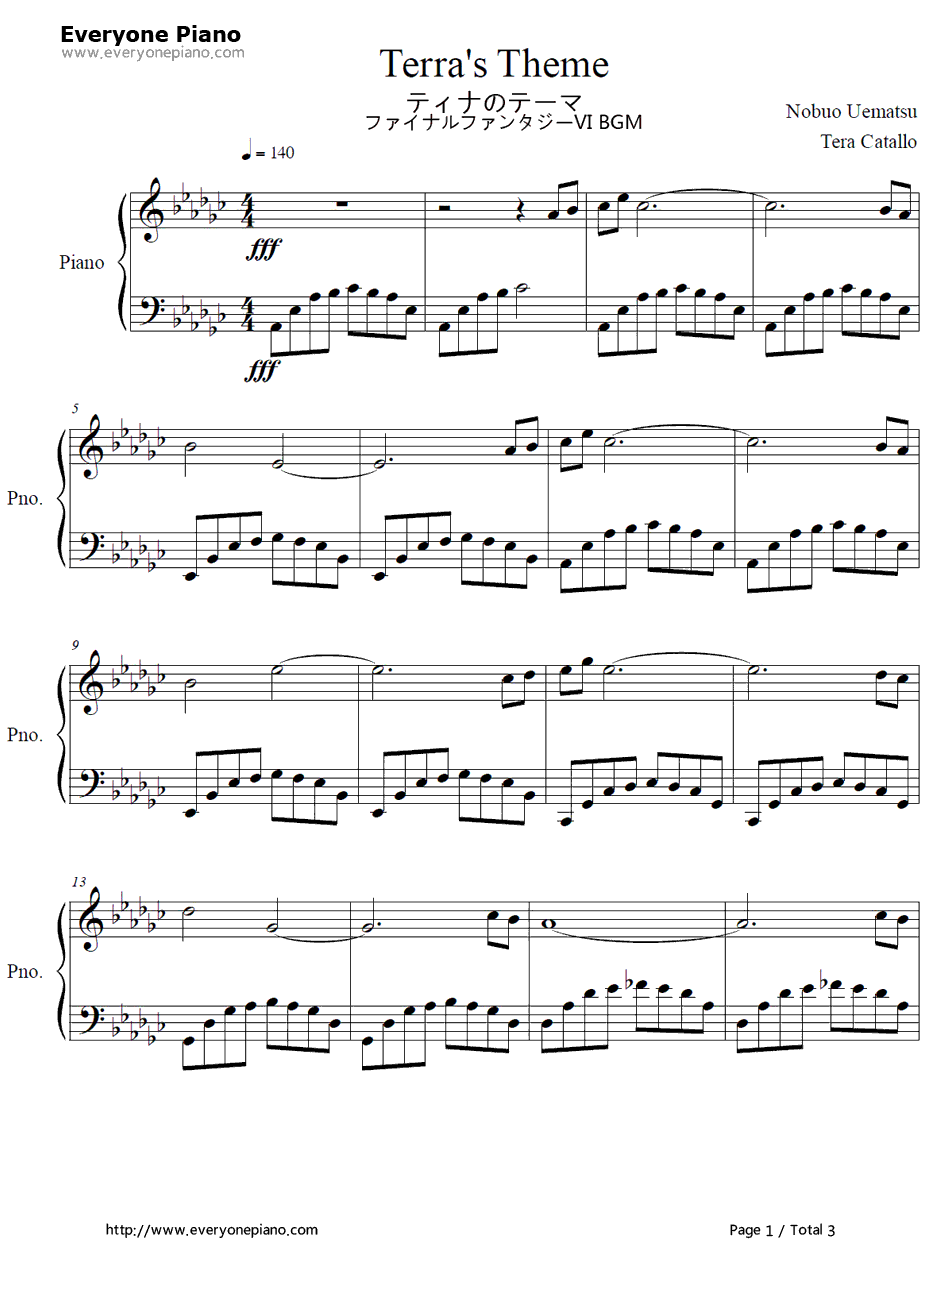 ティナのテーマ钢琴谱-植松伸夫-最终幻想VIOST1